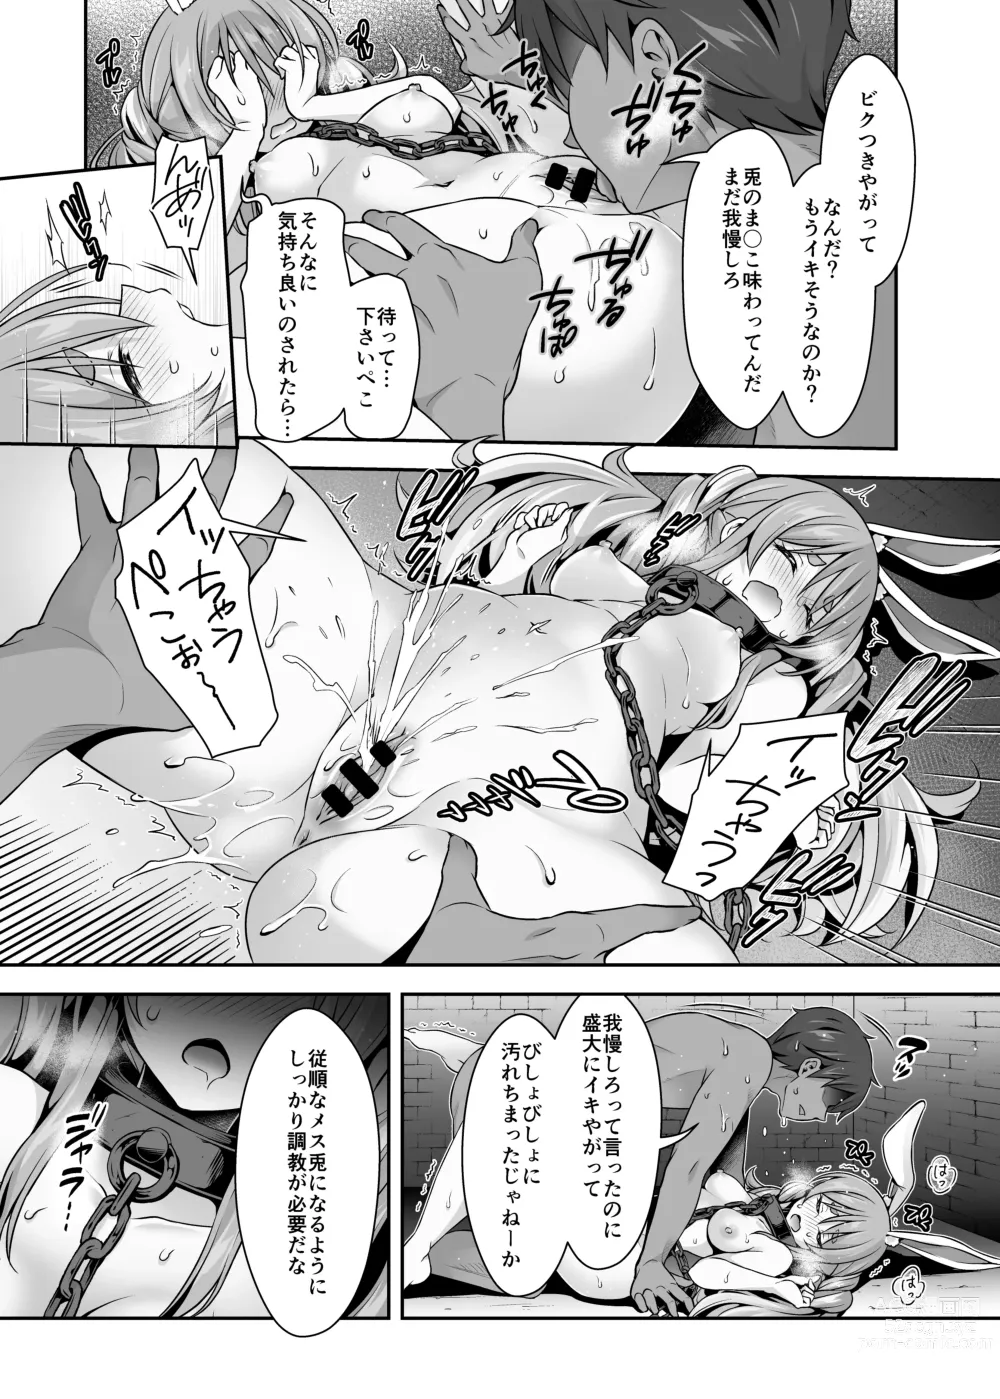 Page 11 of doujinshi Yasei no Usagi ga Nakama ni Naritasou ni Kochira wo Miteiru “Darkness”